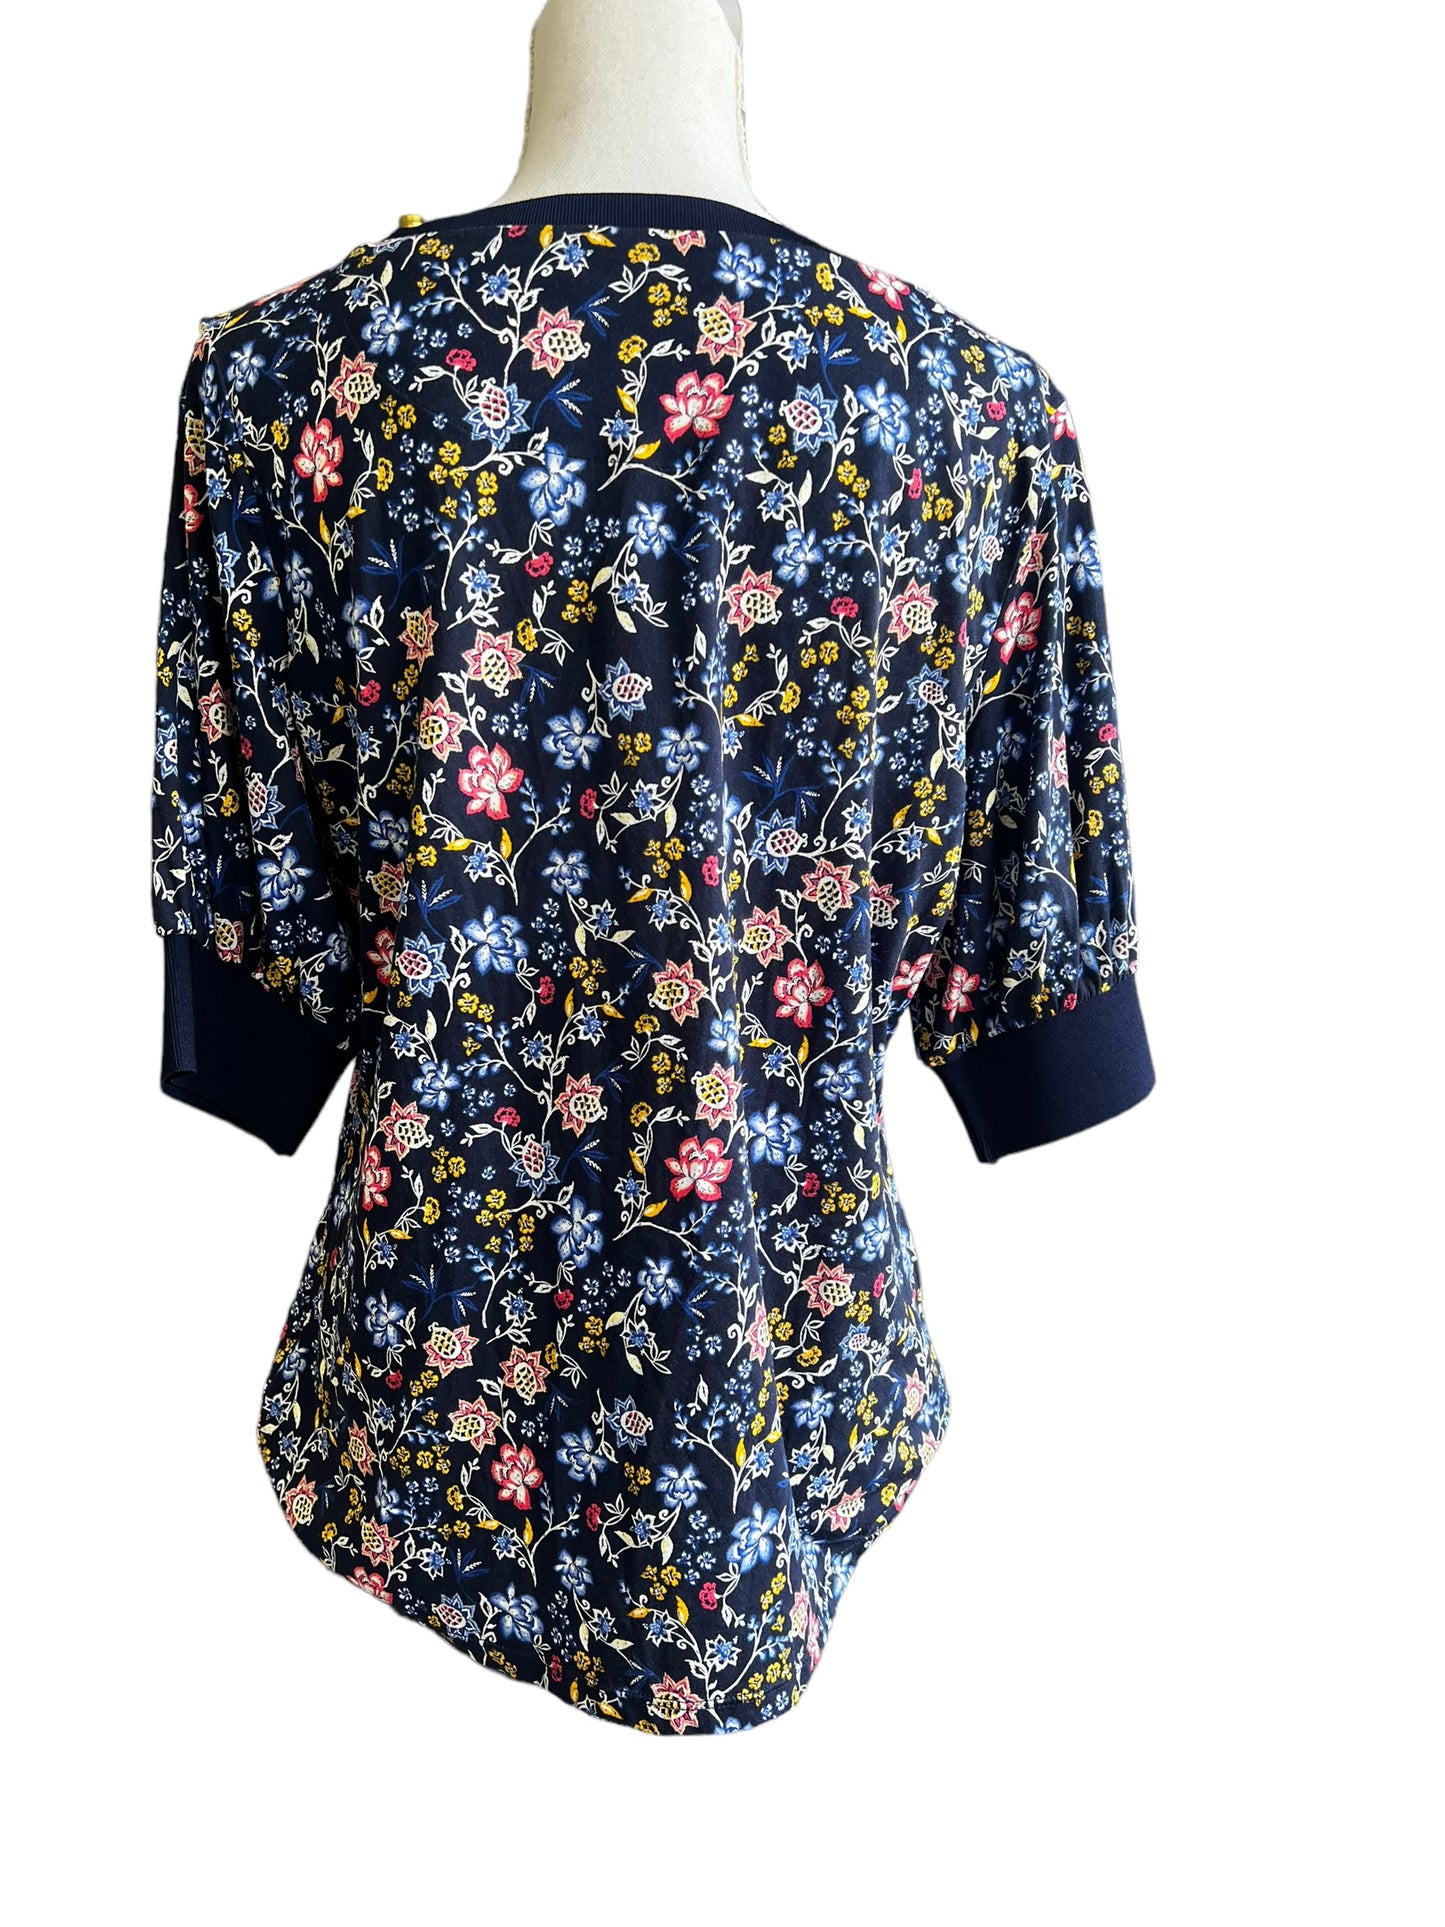 Lauren Ralph Lauren women’s black floral shirt sleeve cotton shirt size: L